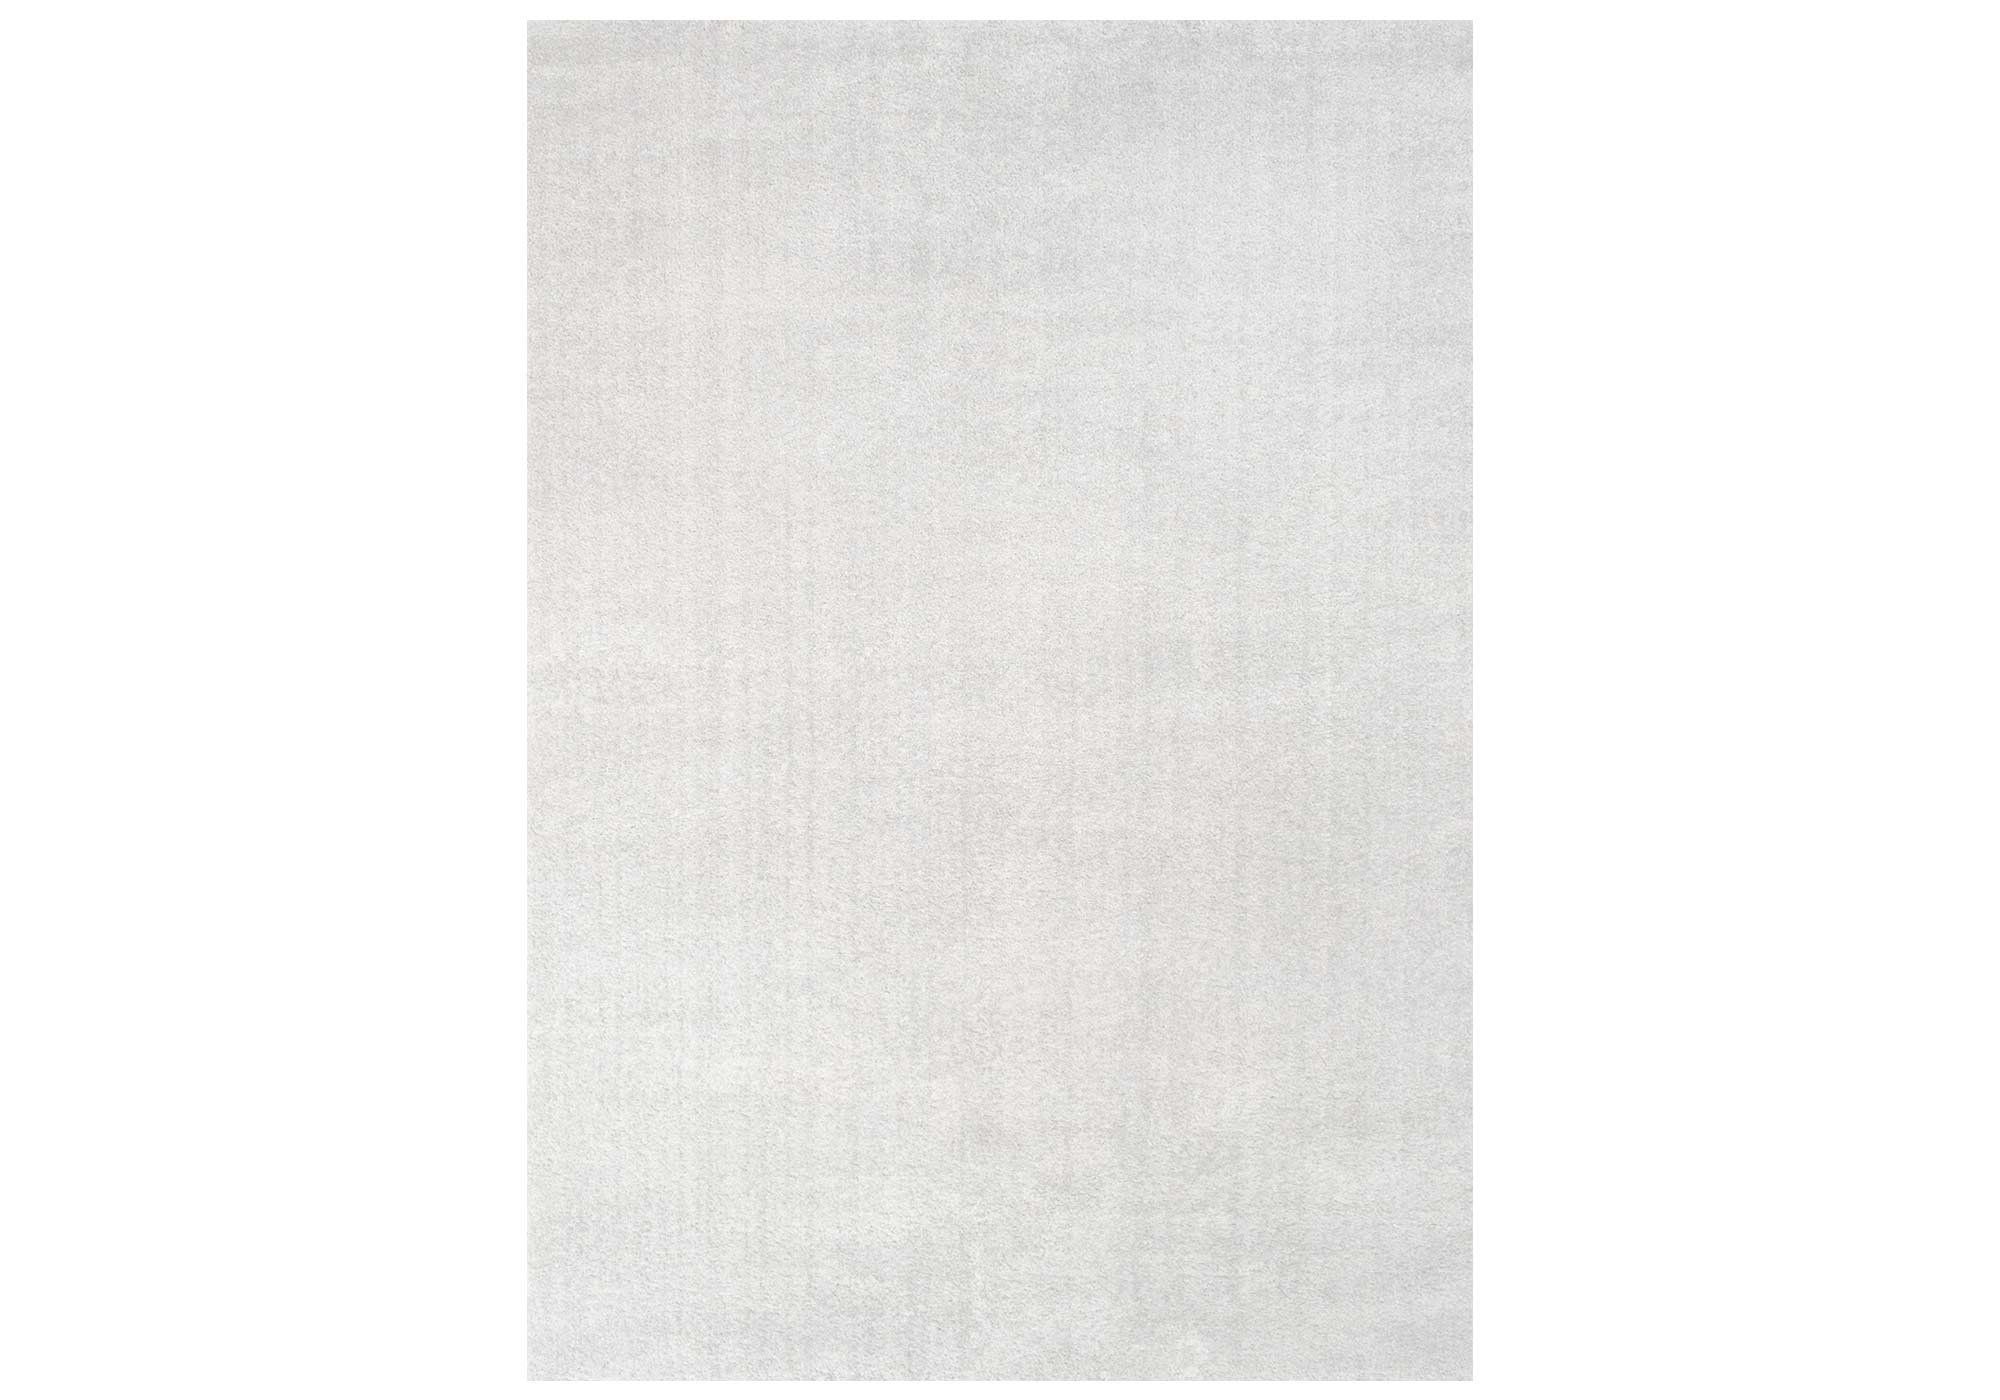 Festival Hochflor-Teppich 120 x 170 cm - weiß - 30 mm Höhe - weich - Delgardo 501